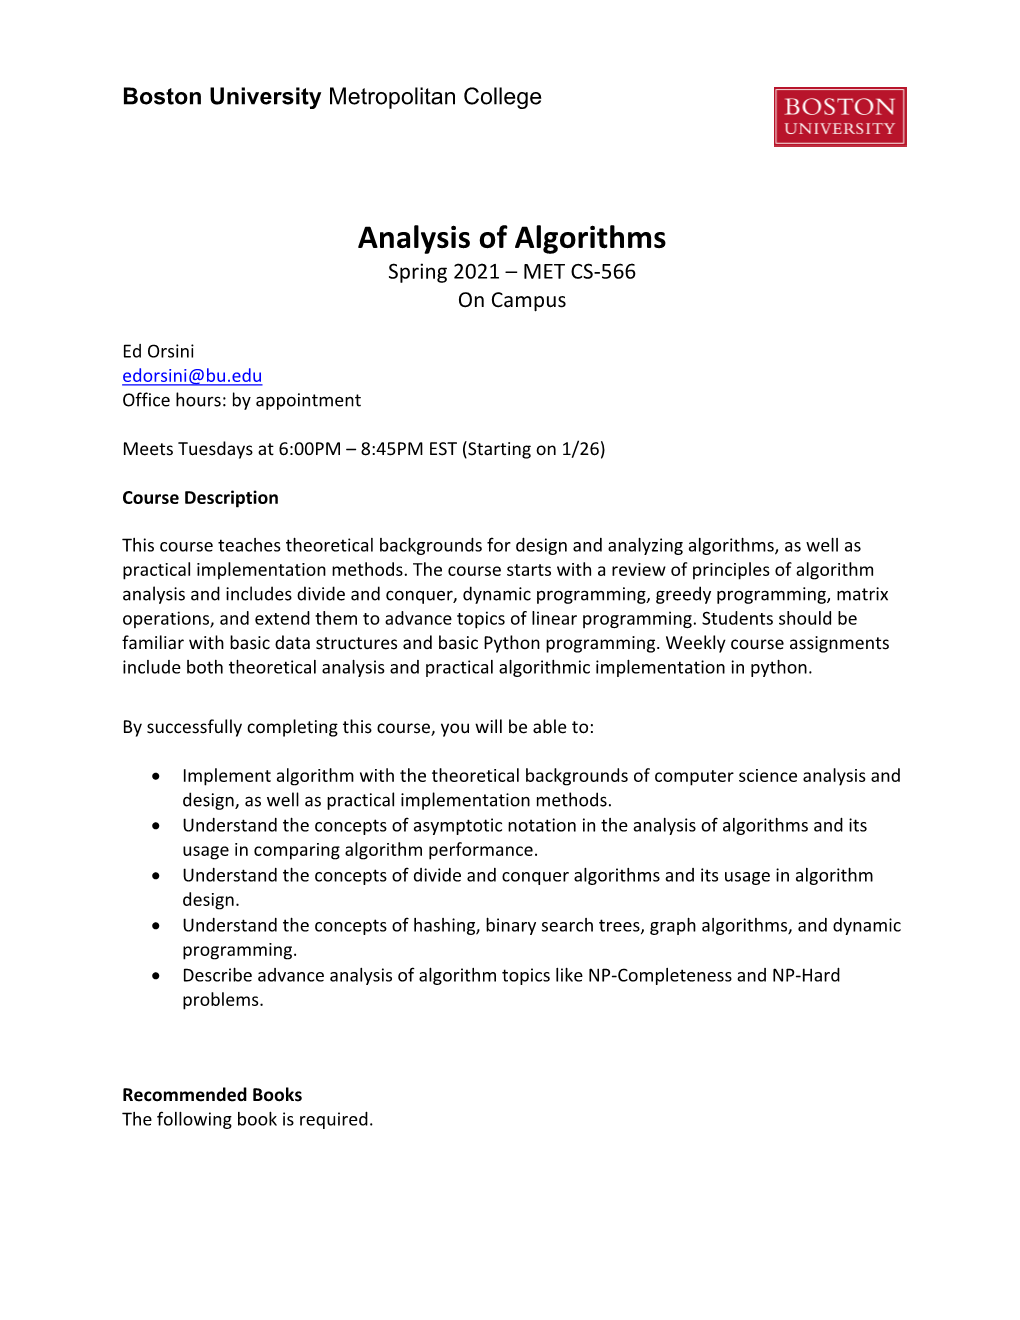 Analysis of Algorithms Spring 2021 – MET CS-566 on Campus